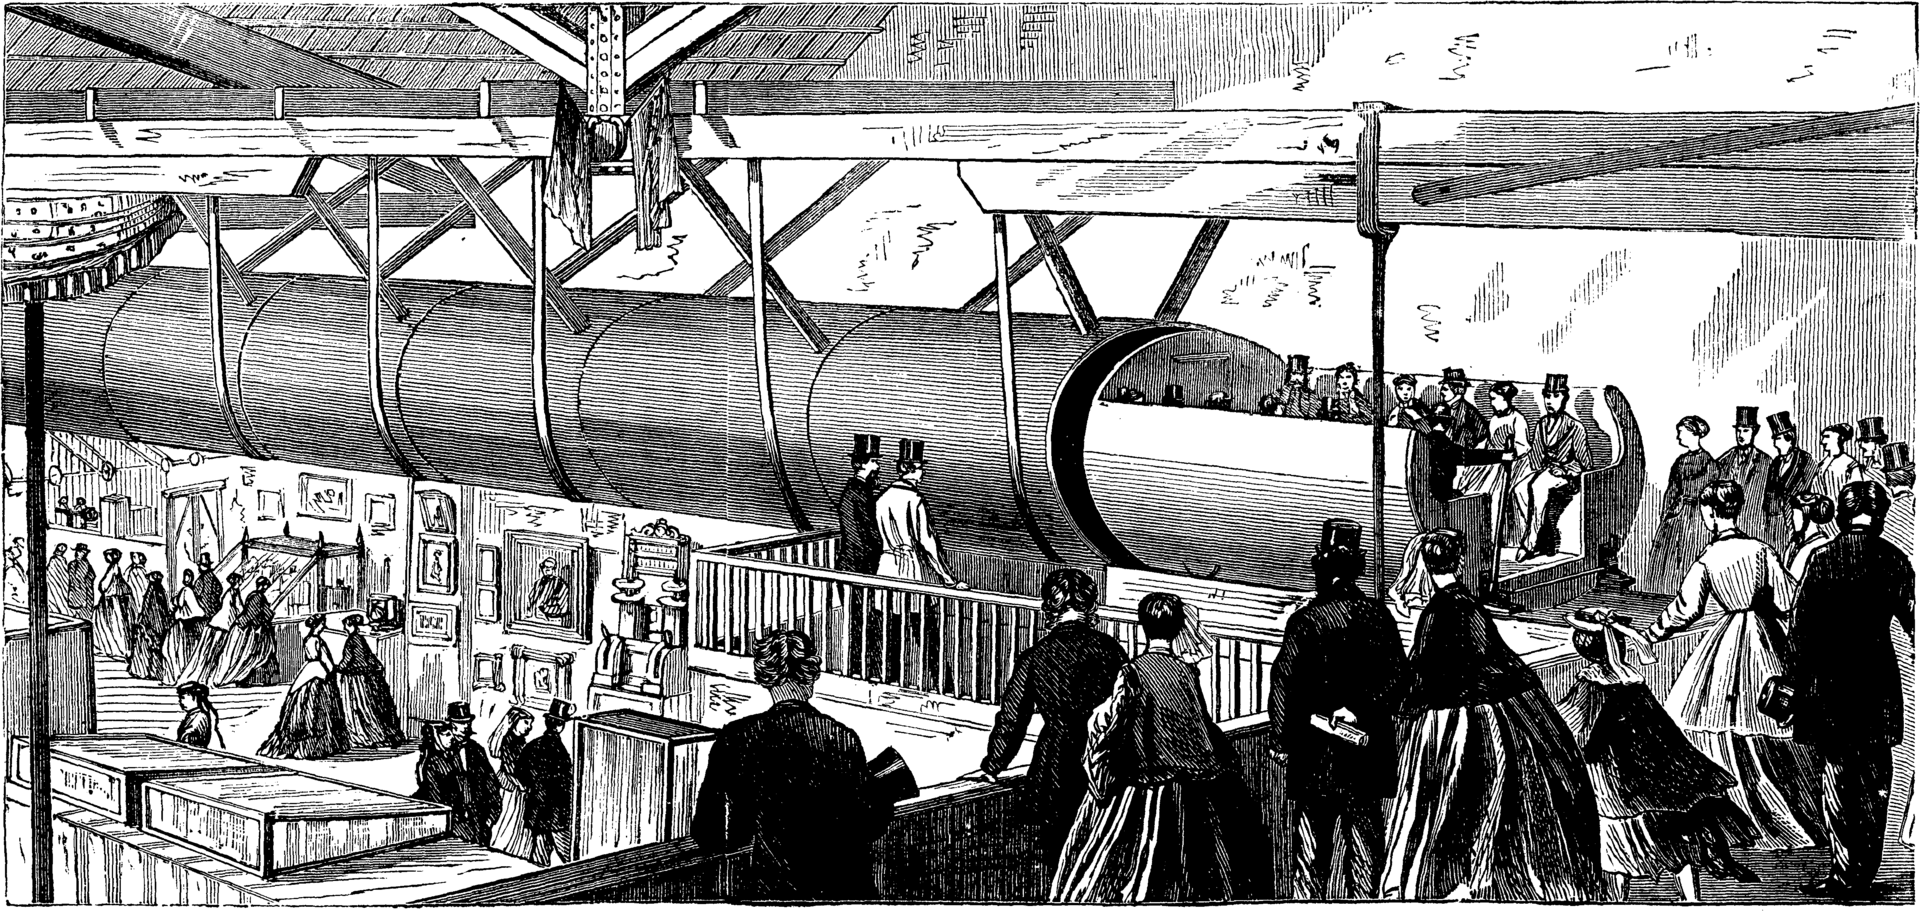 Basierend auf den Ideen von George Medhurst sieht man hier eine zeitgenössische Radierung von 1867, die ein Modell von Alfred Ely Beach pneumatischer Vakuumbahn illustriert. Bildquelle: https://en.wikipedia.org/wiki/Pneumatic_tube 